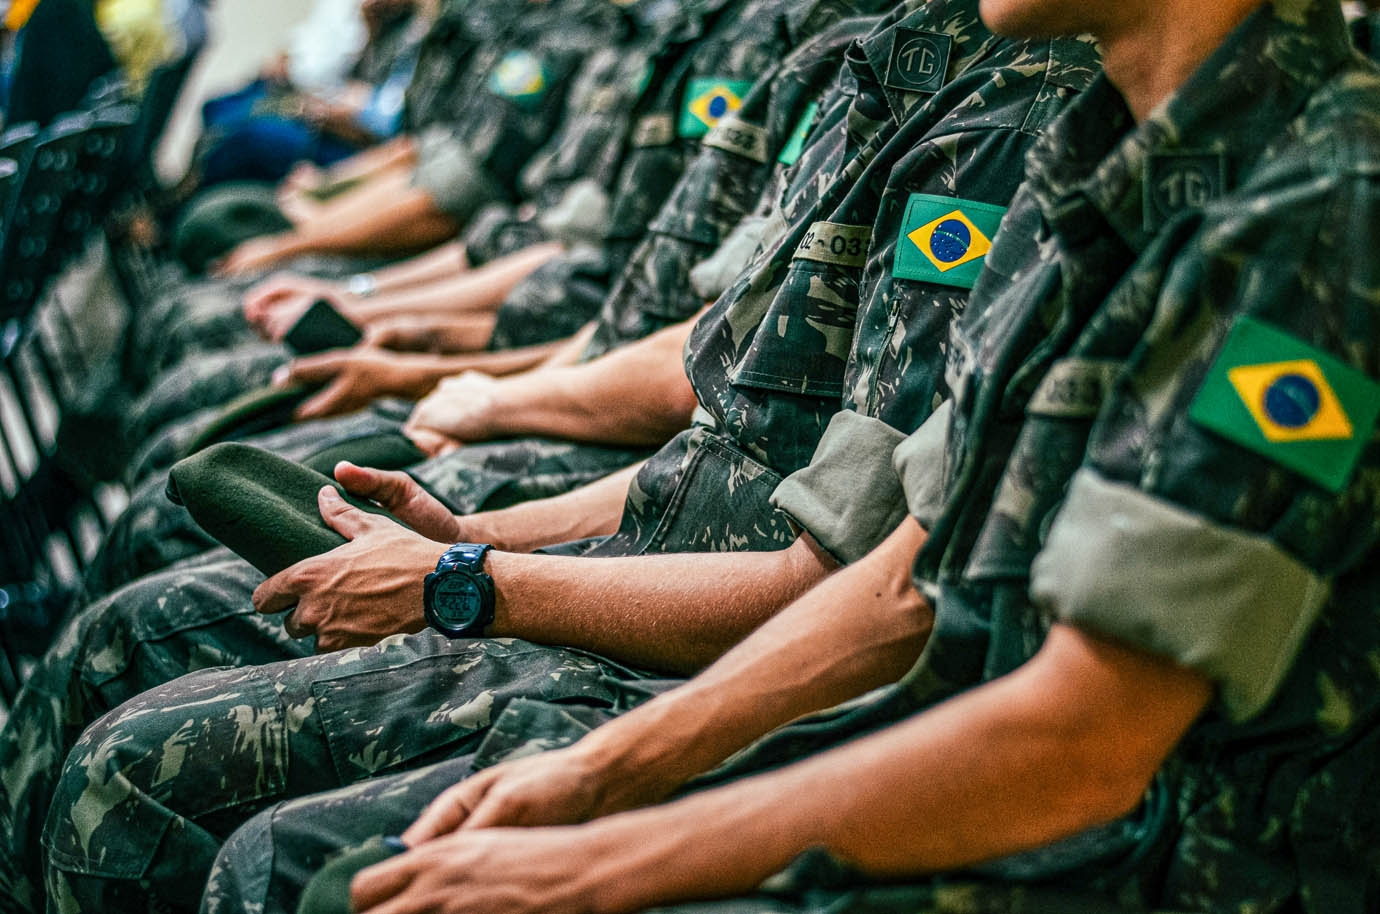 A convite do Brasil, tropas dos EUA participarão de